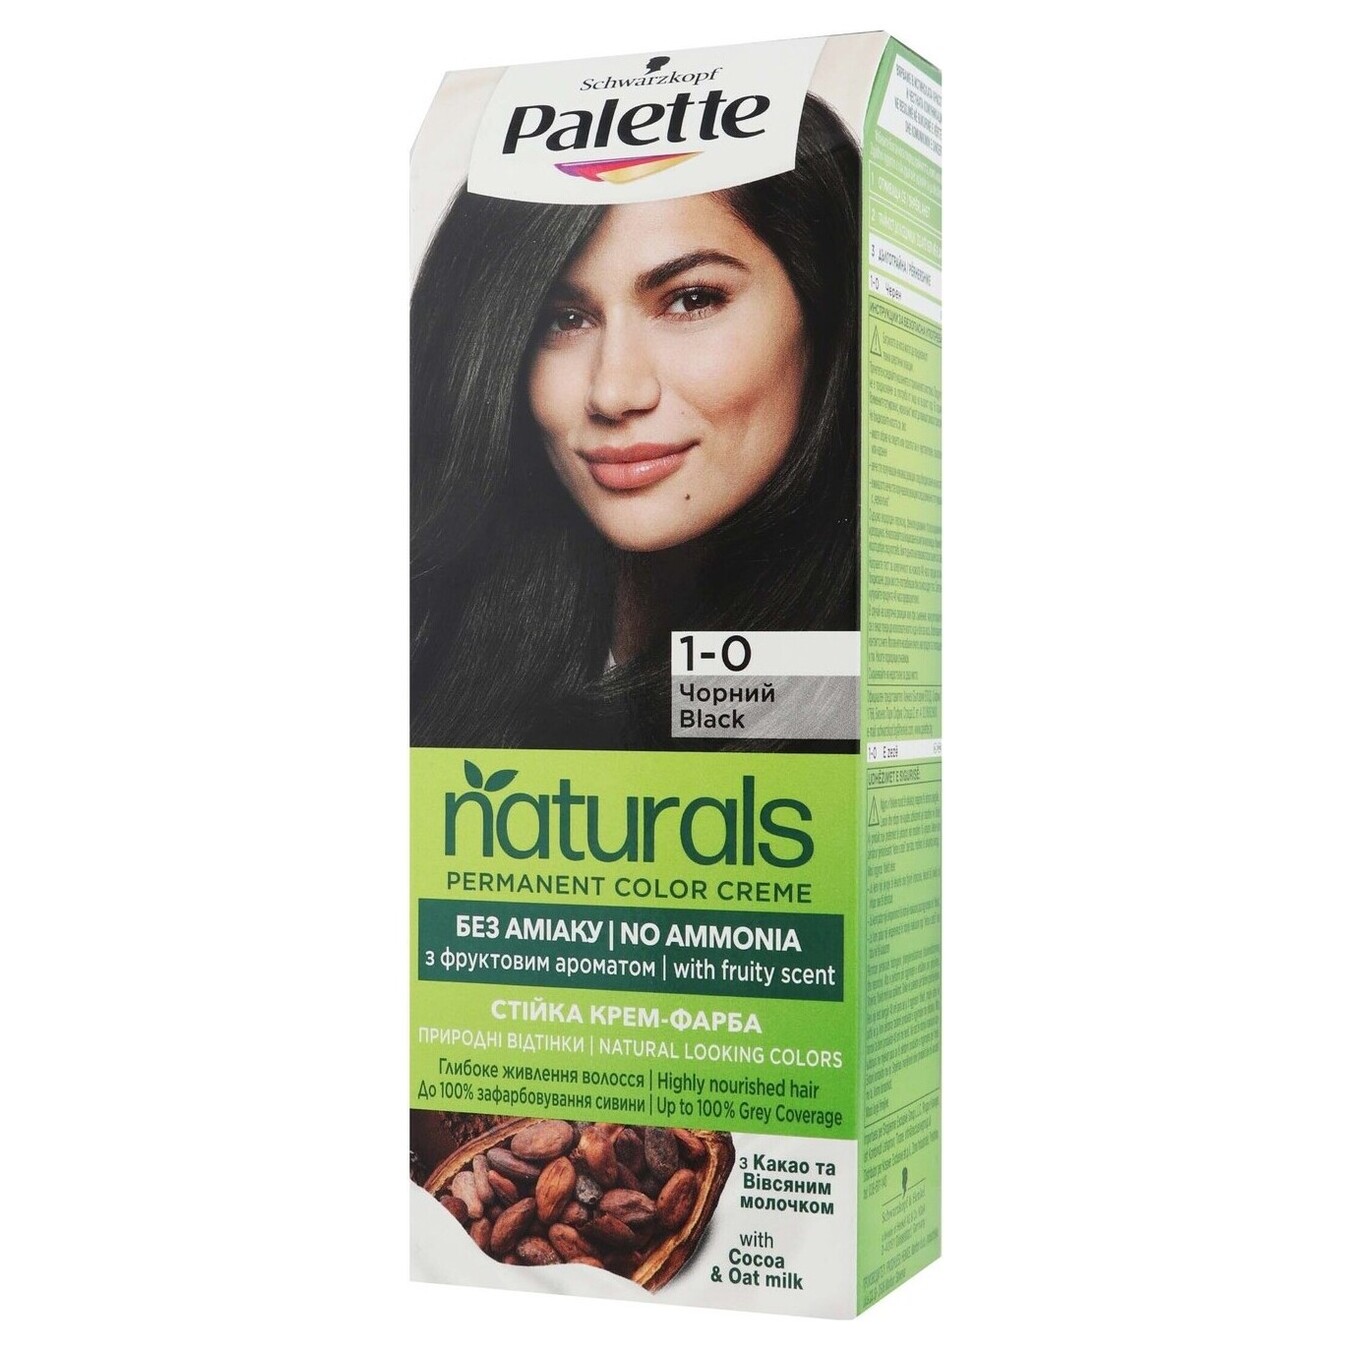 Крем-фарба Palette Naturals 1-0 Чорний для волосся без аміаку стійка 110мл 2